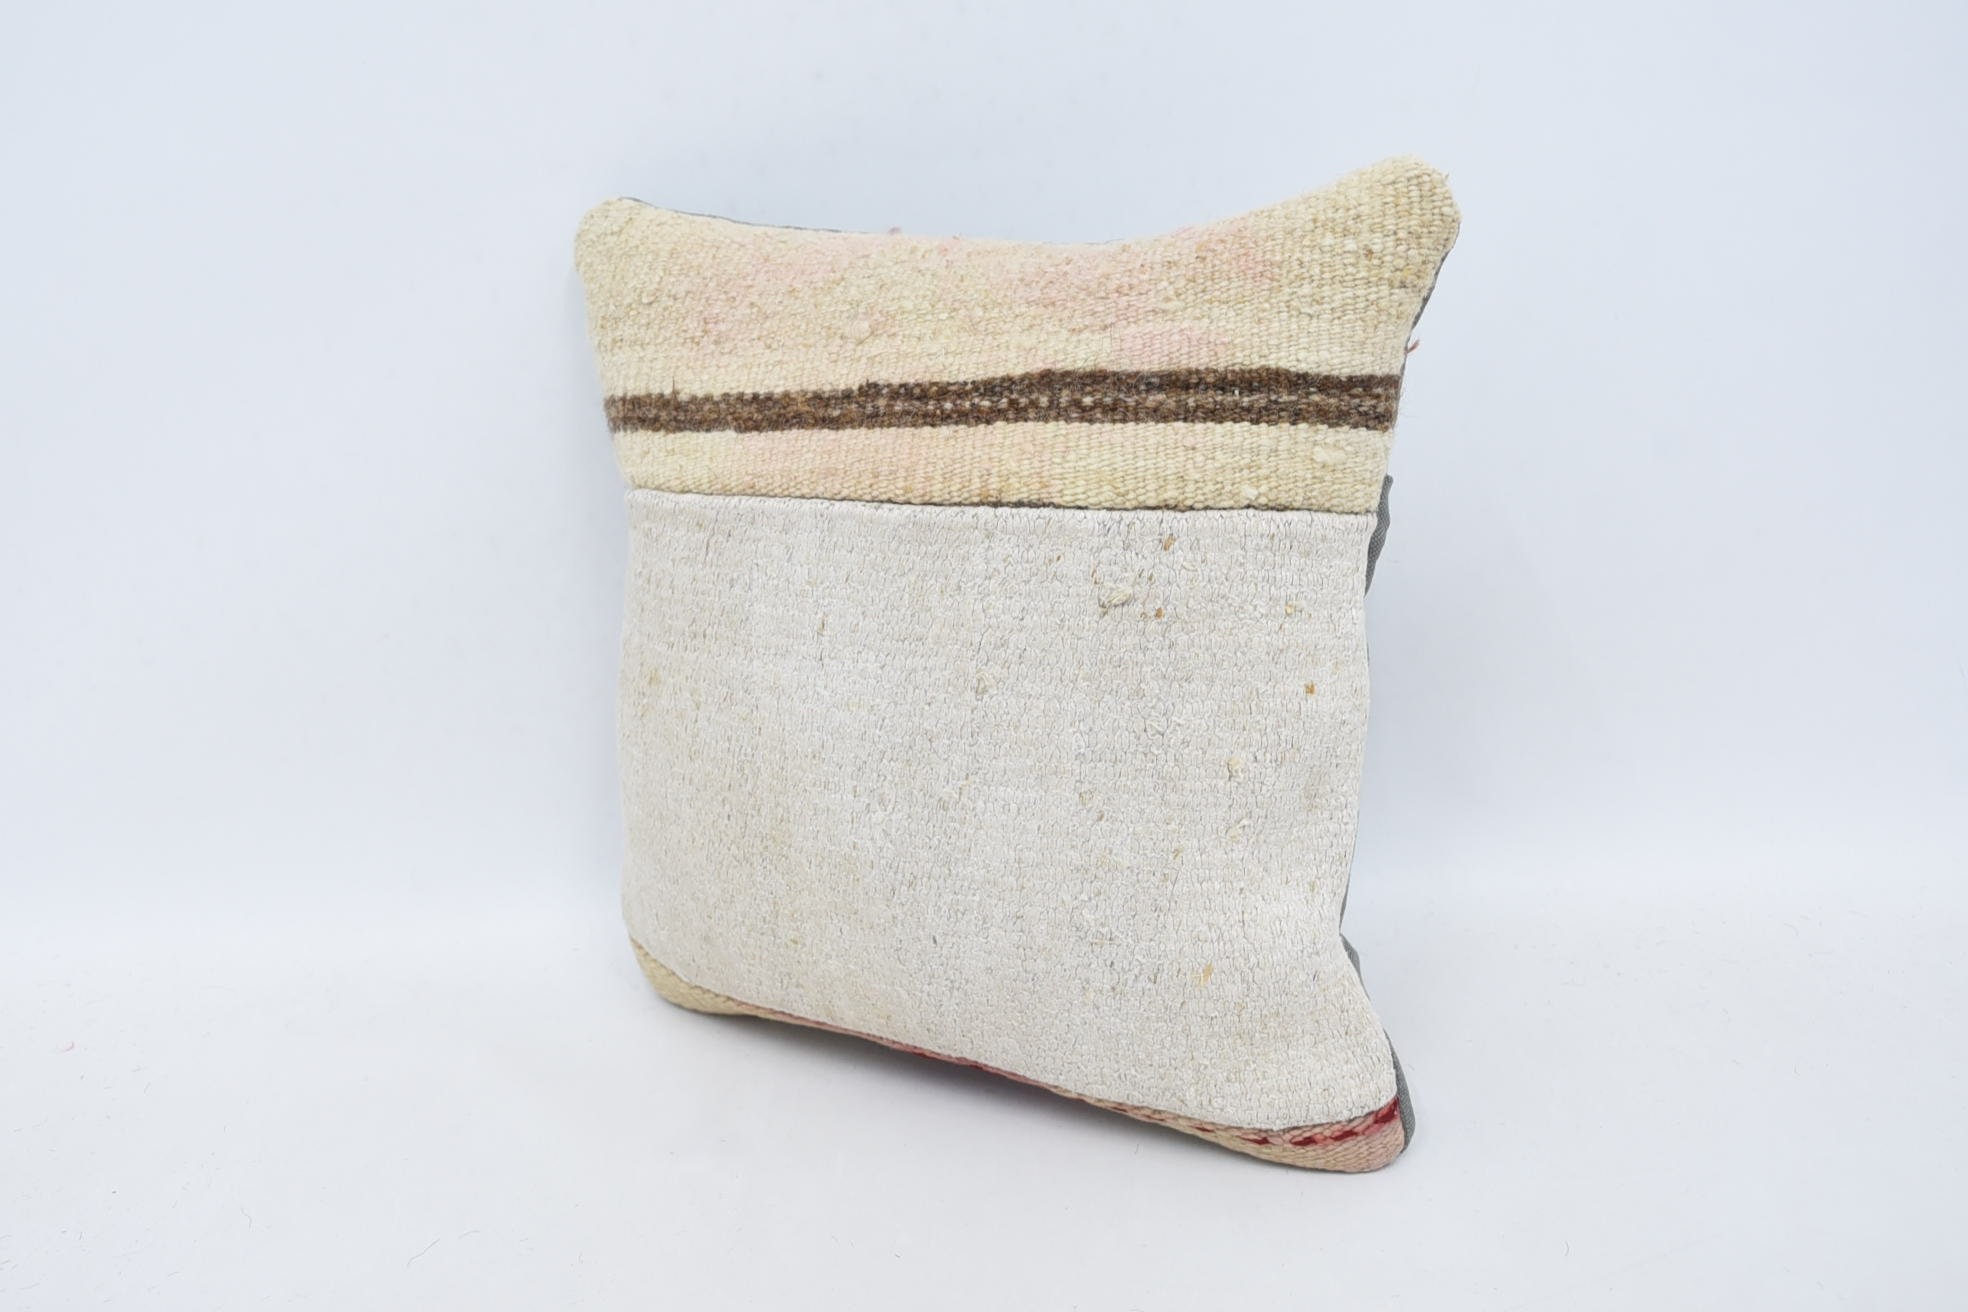 Crochet Pattern Pillow, Antique Pillows, Aztec Cushion, 14"x14" White Cushion Case, Kilim Cushion Sham, Pillow for Couch